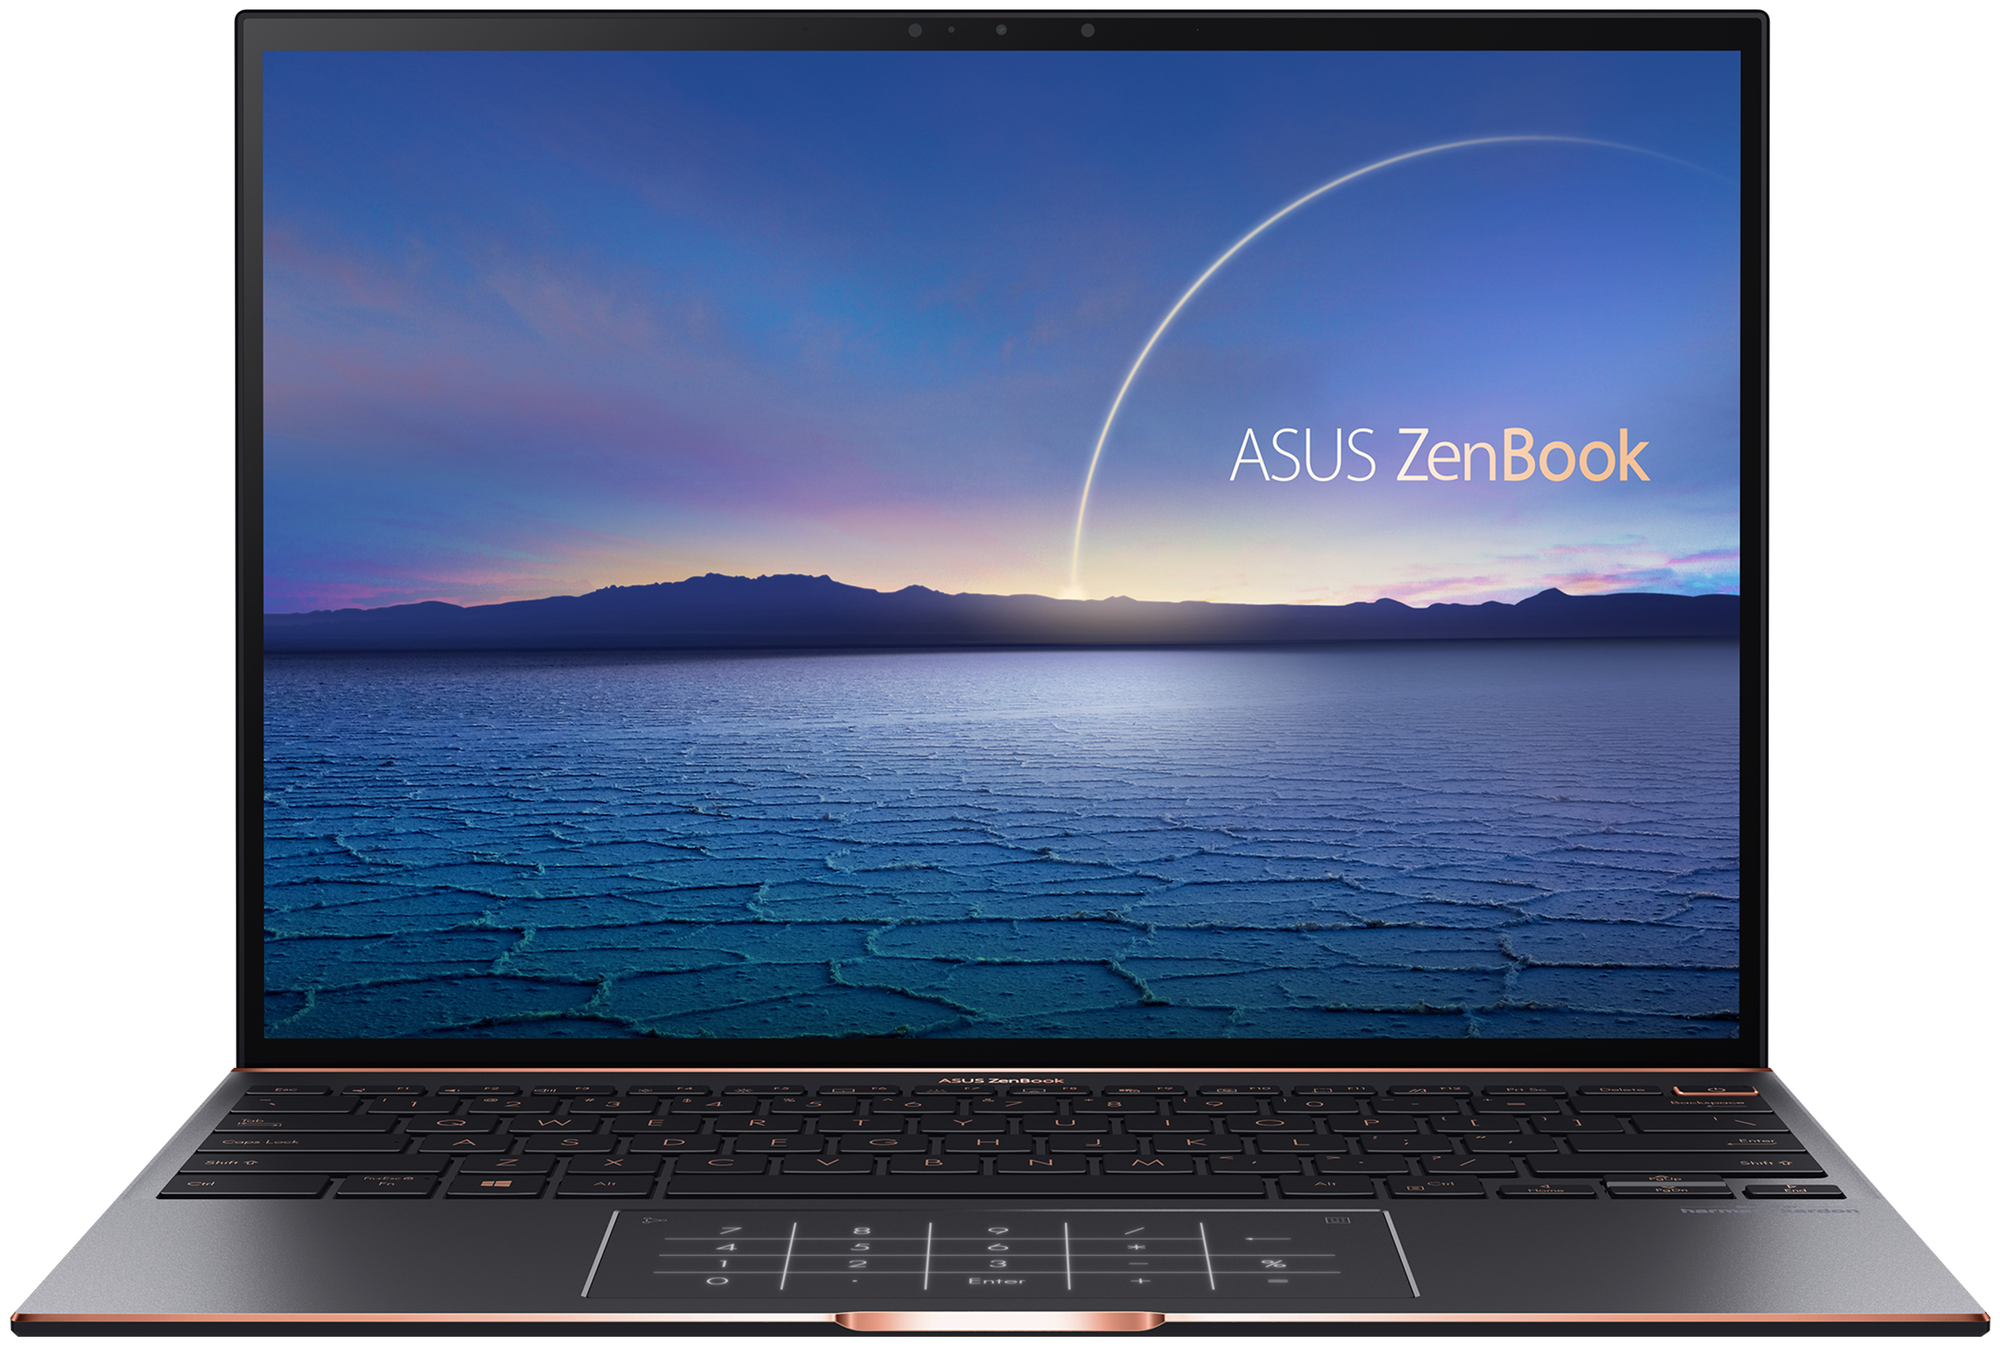 Ноутбук Asus ZenBook S UX393EA-HK001T 13.9(3300x2200)IPS-уровня/ i7-1165G7(2.8ГГц)/ 16Гб/ 1Тб SSD/ Iris Plus Graphics/ Win10 / Черный 90NB0S71-M00230